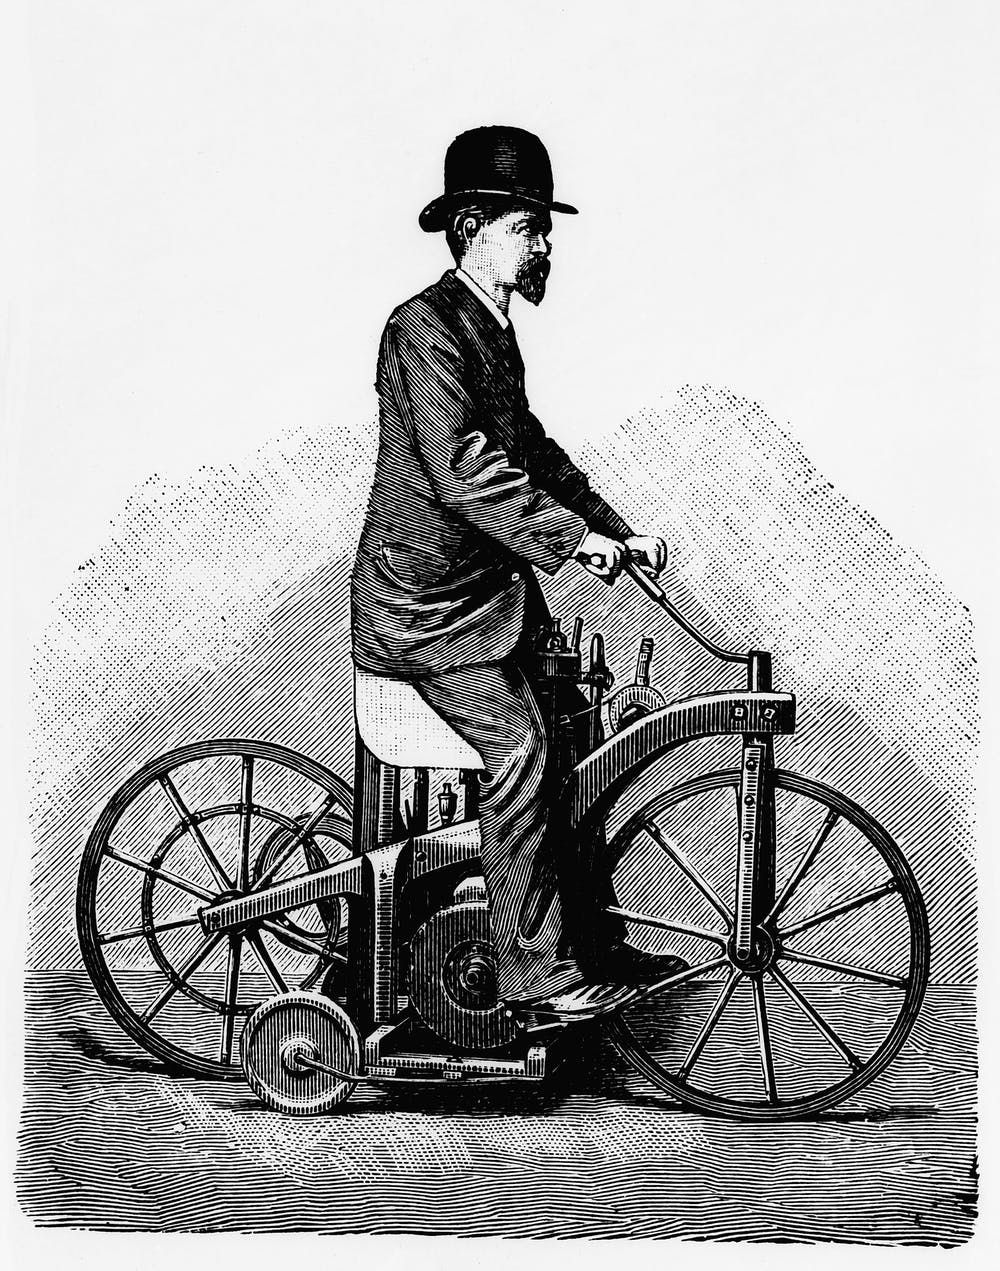 Daimler Reitwagen- The First Ride Was November 1885